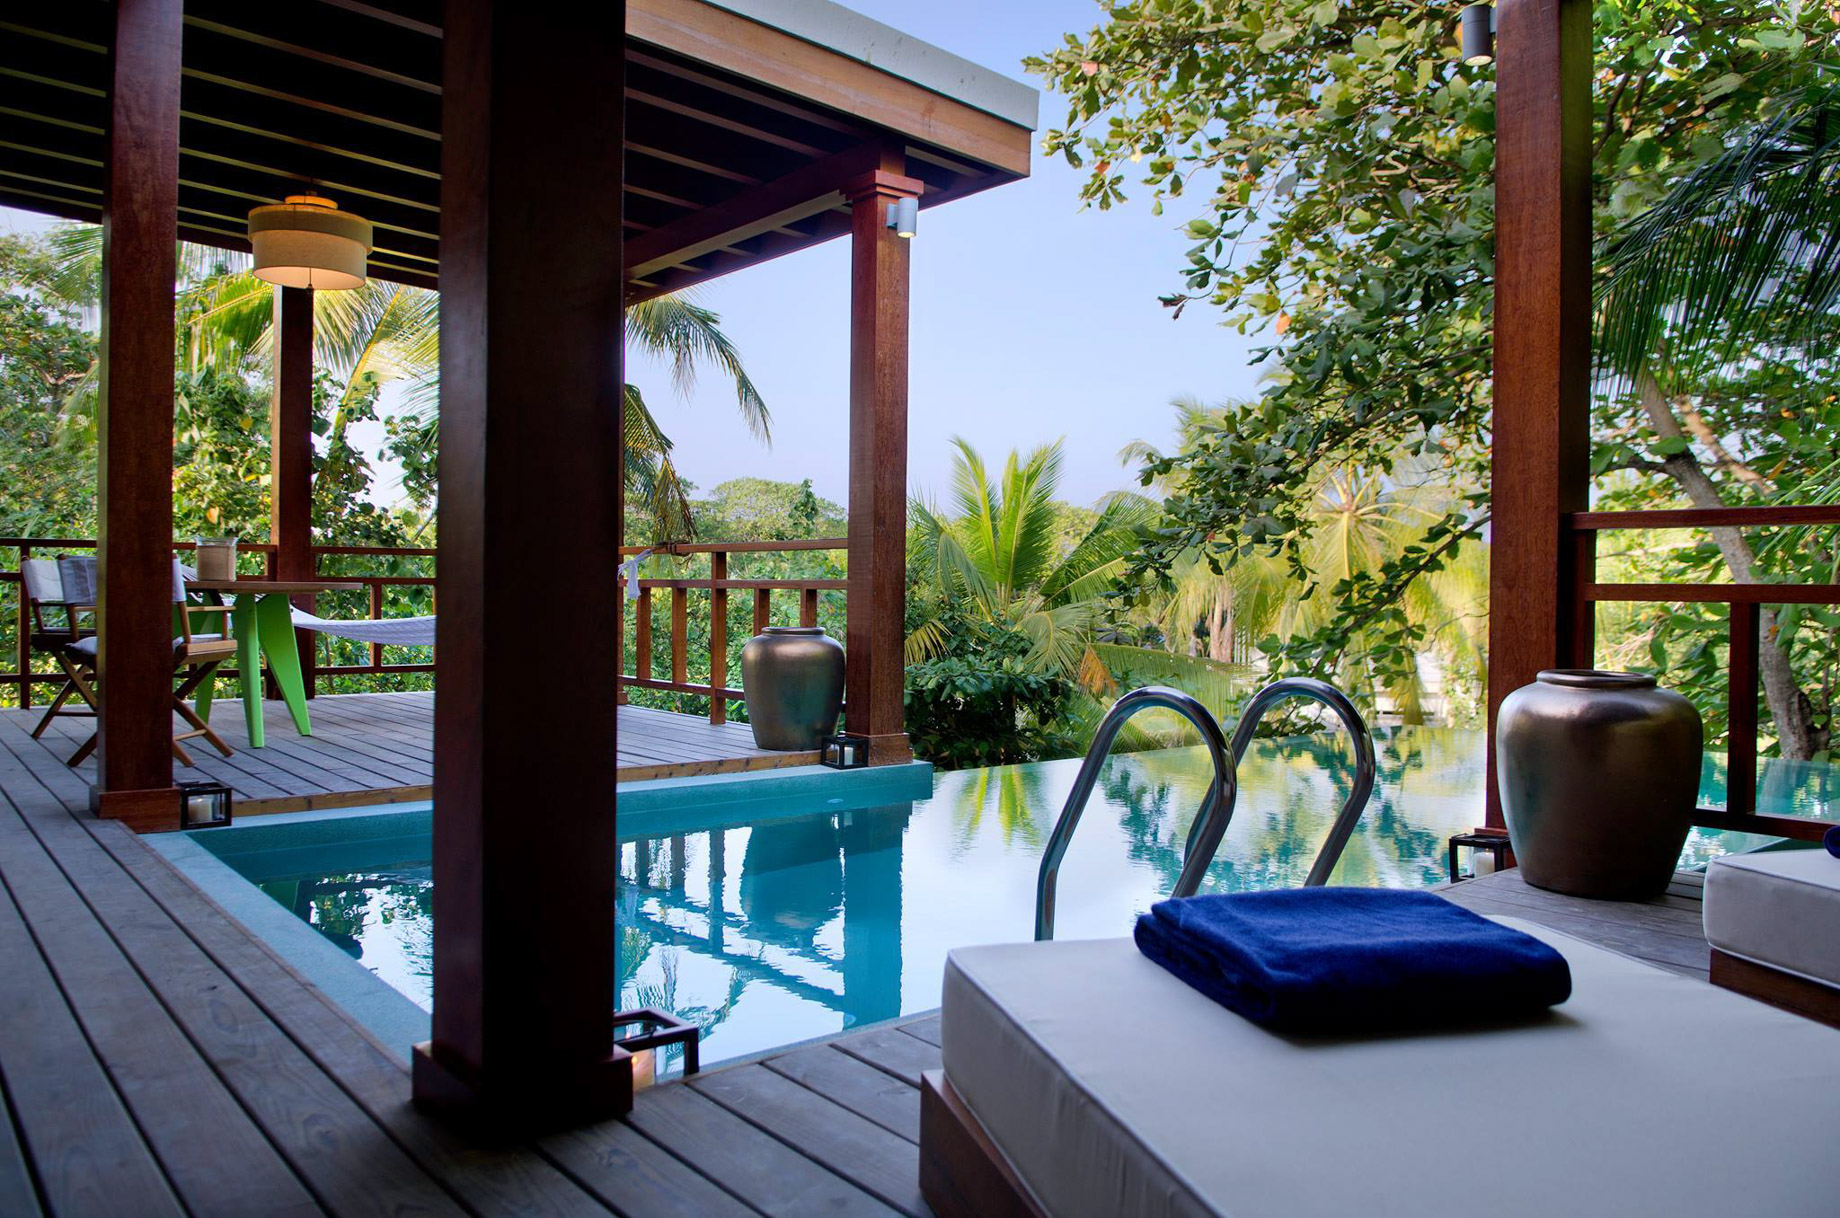 Amilla Fushi Resort and Residences – Baa Atoll, Maldives – Treetop Pool Villa Deck